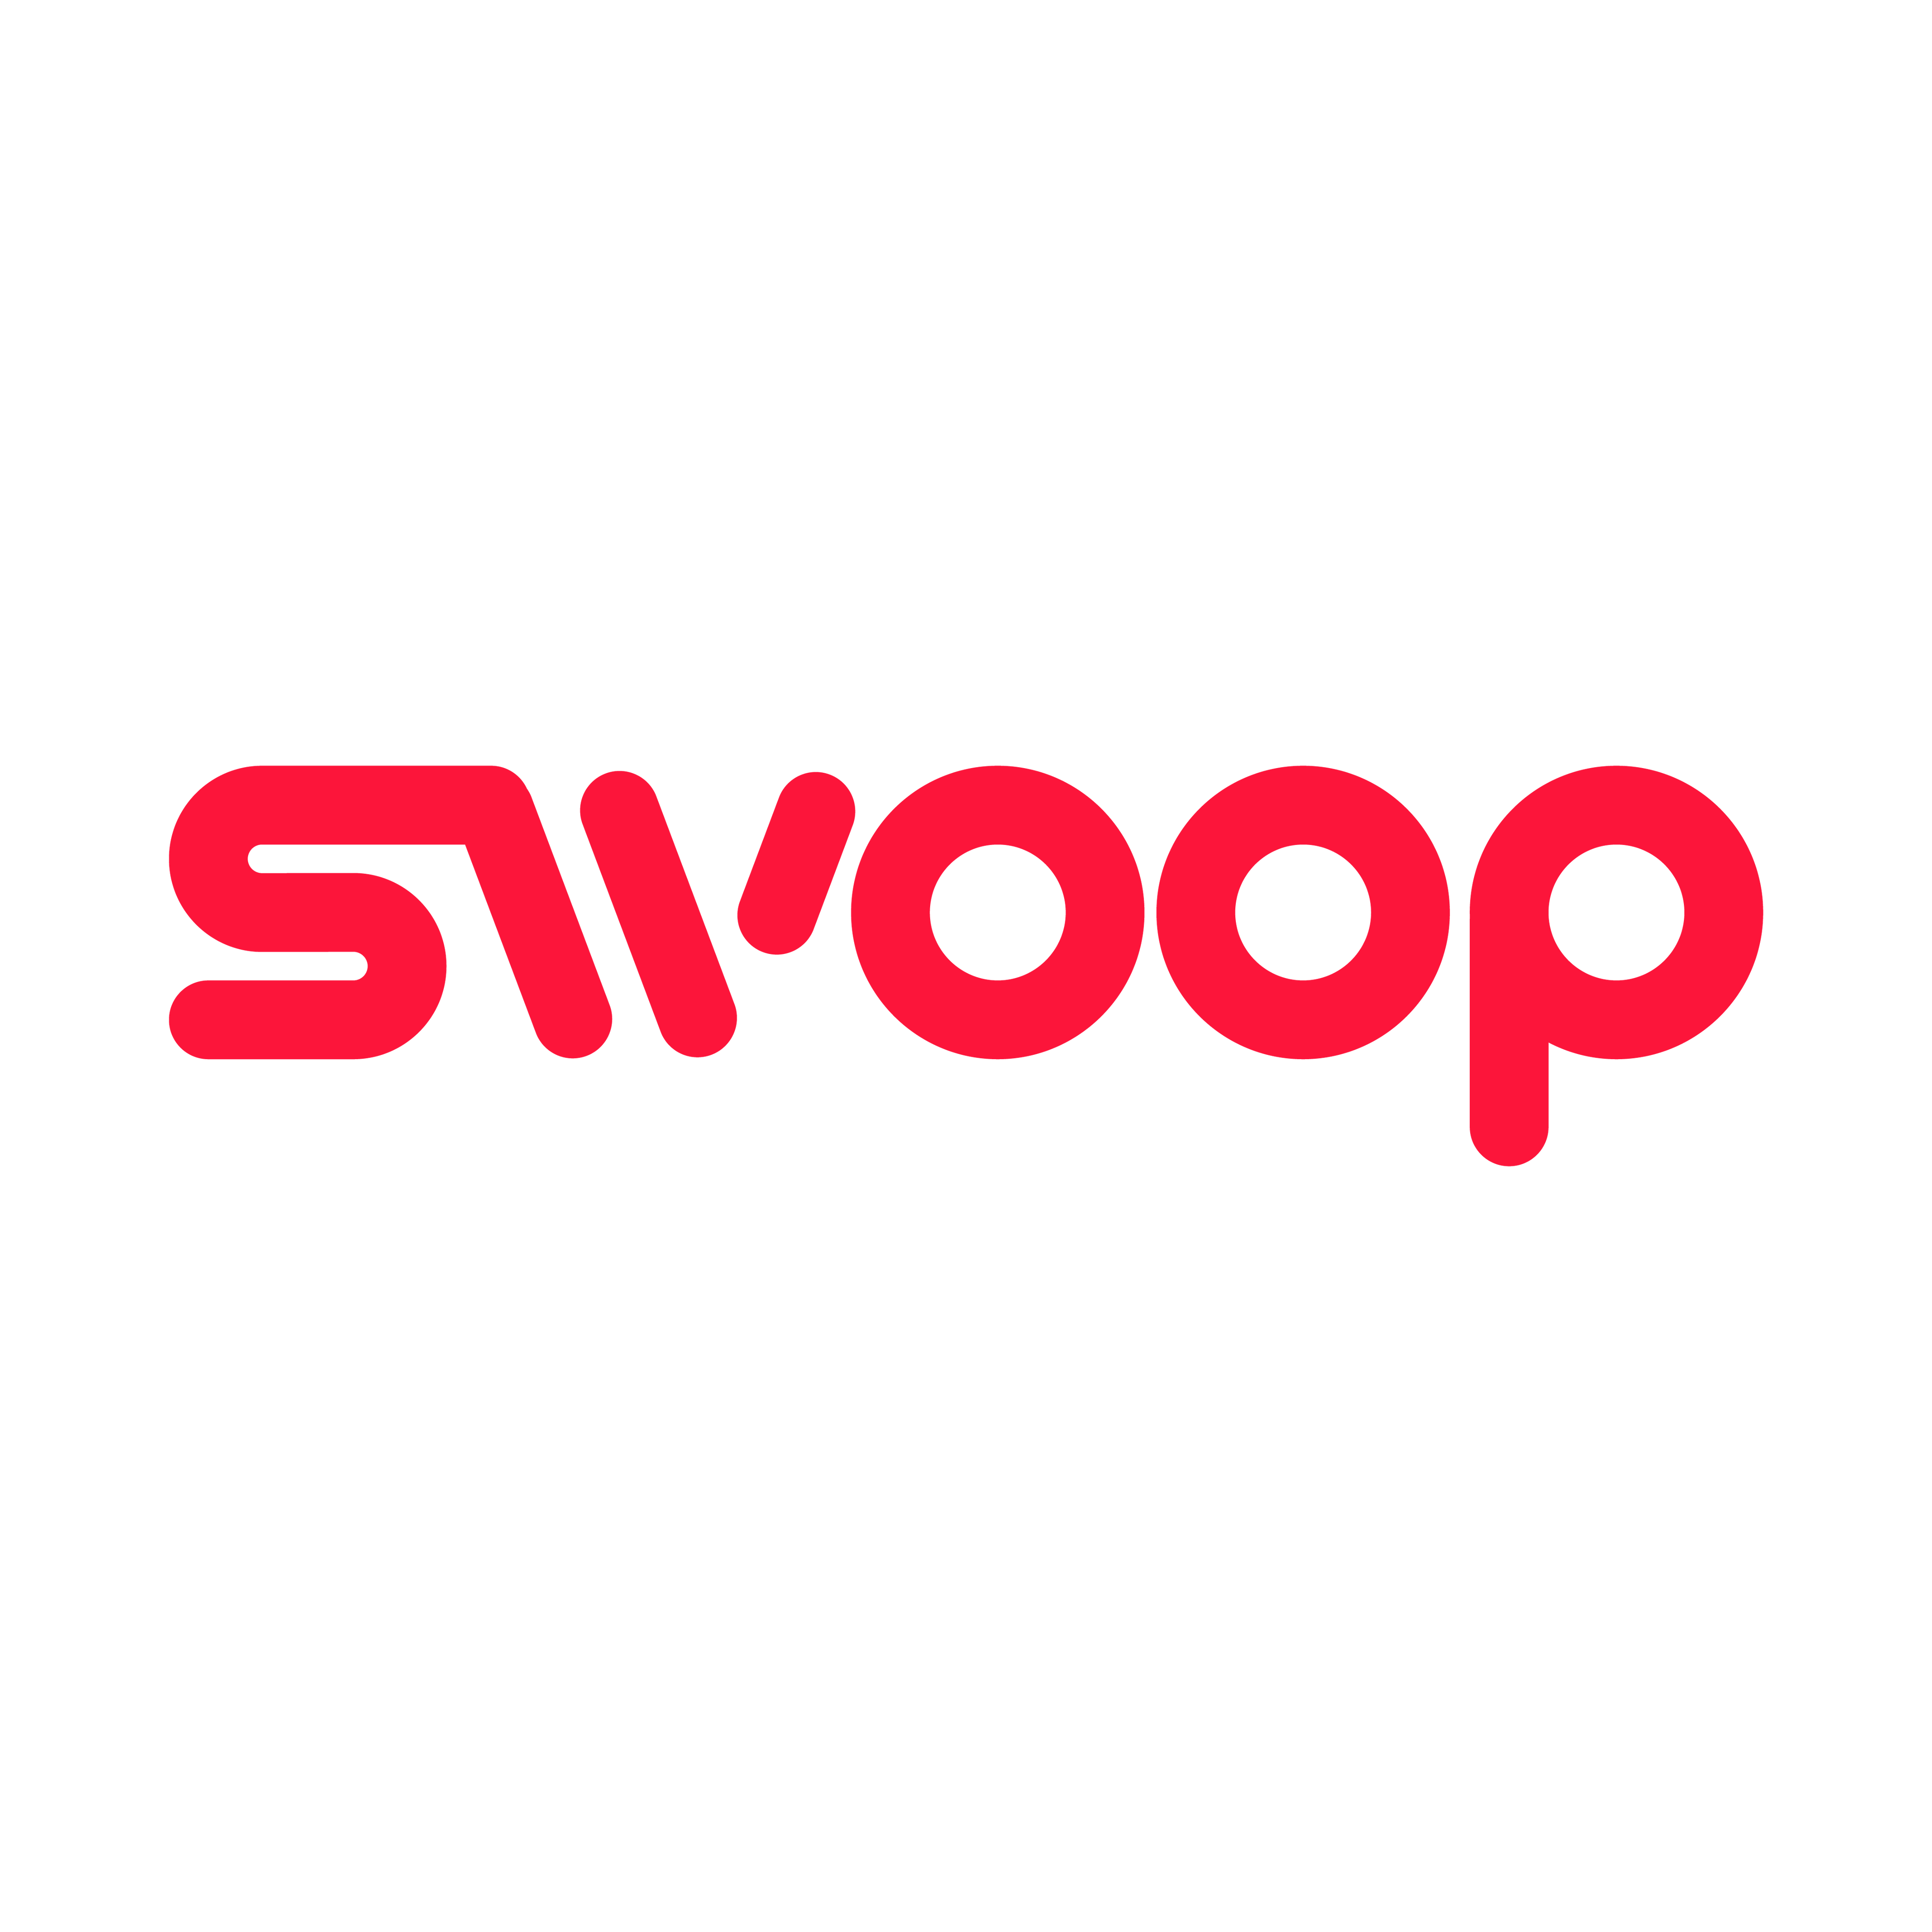 Swoop Pte. Ltd.